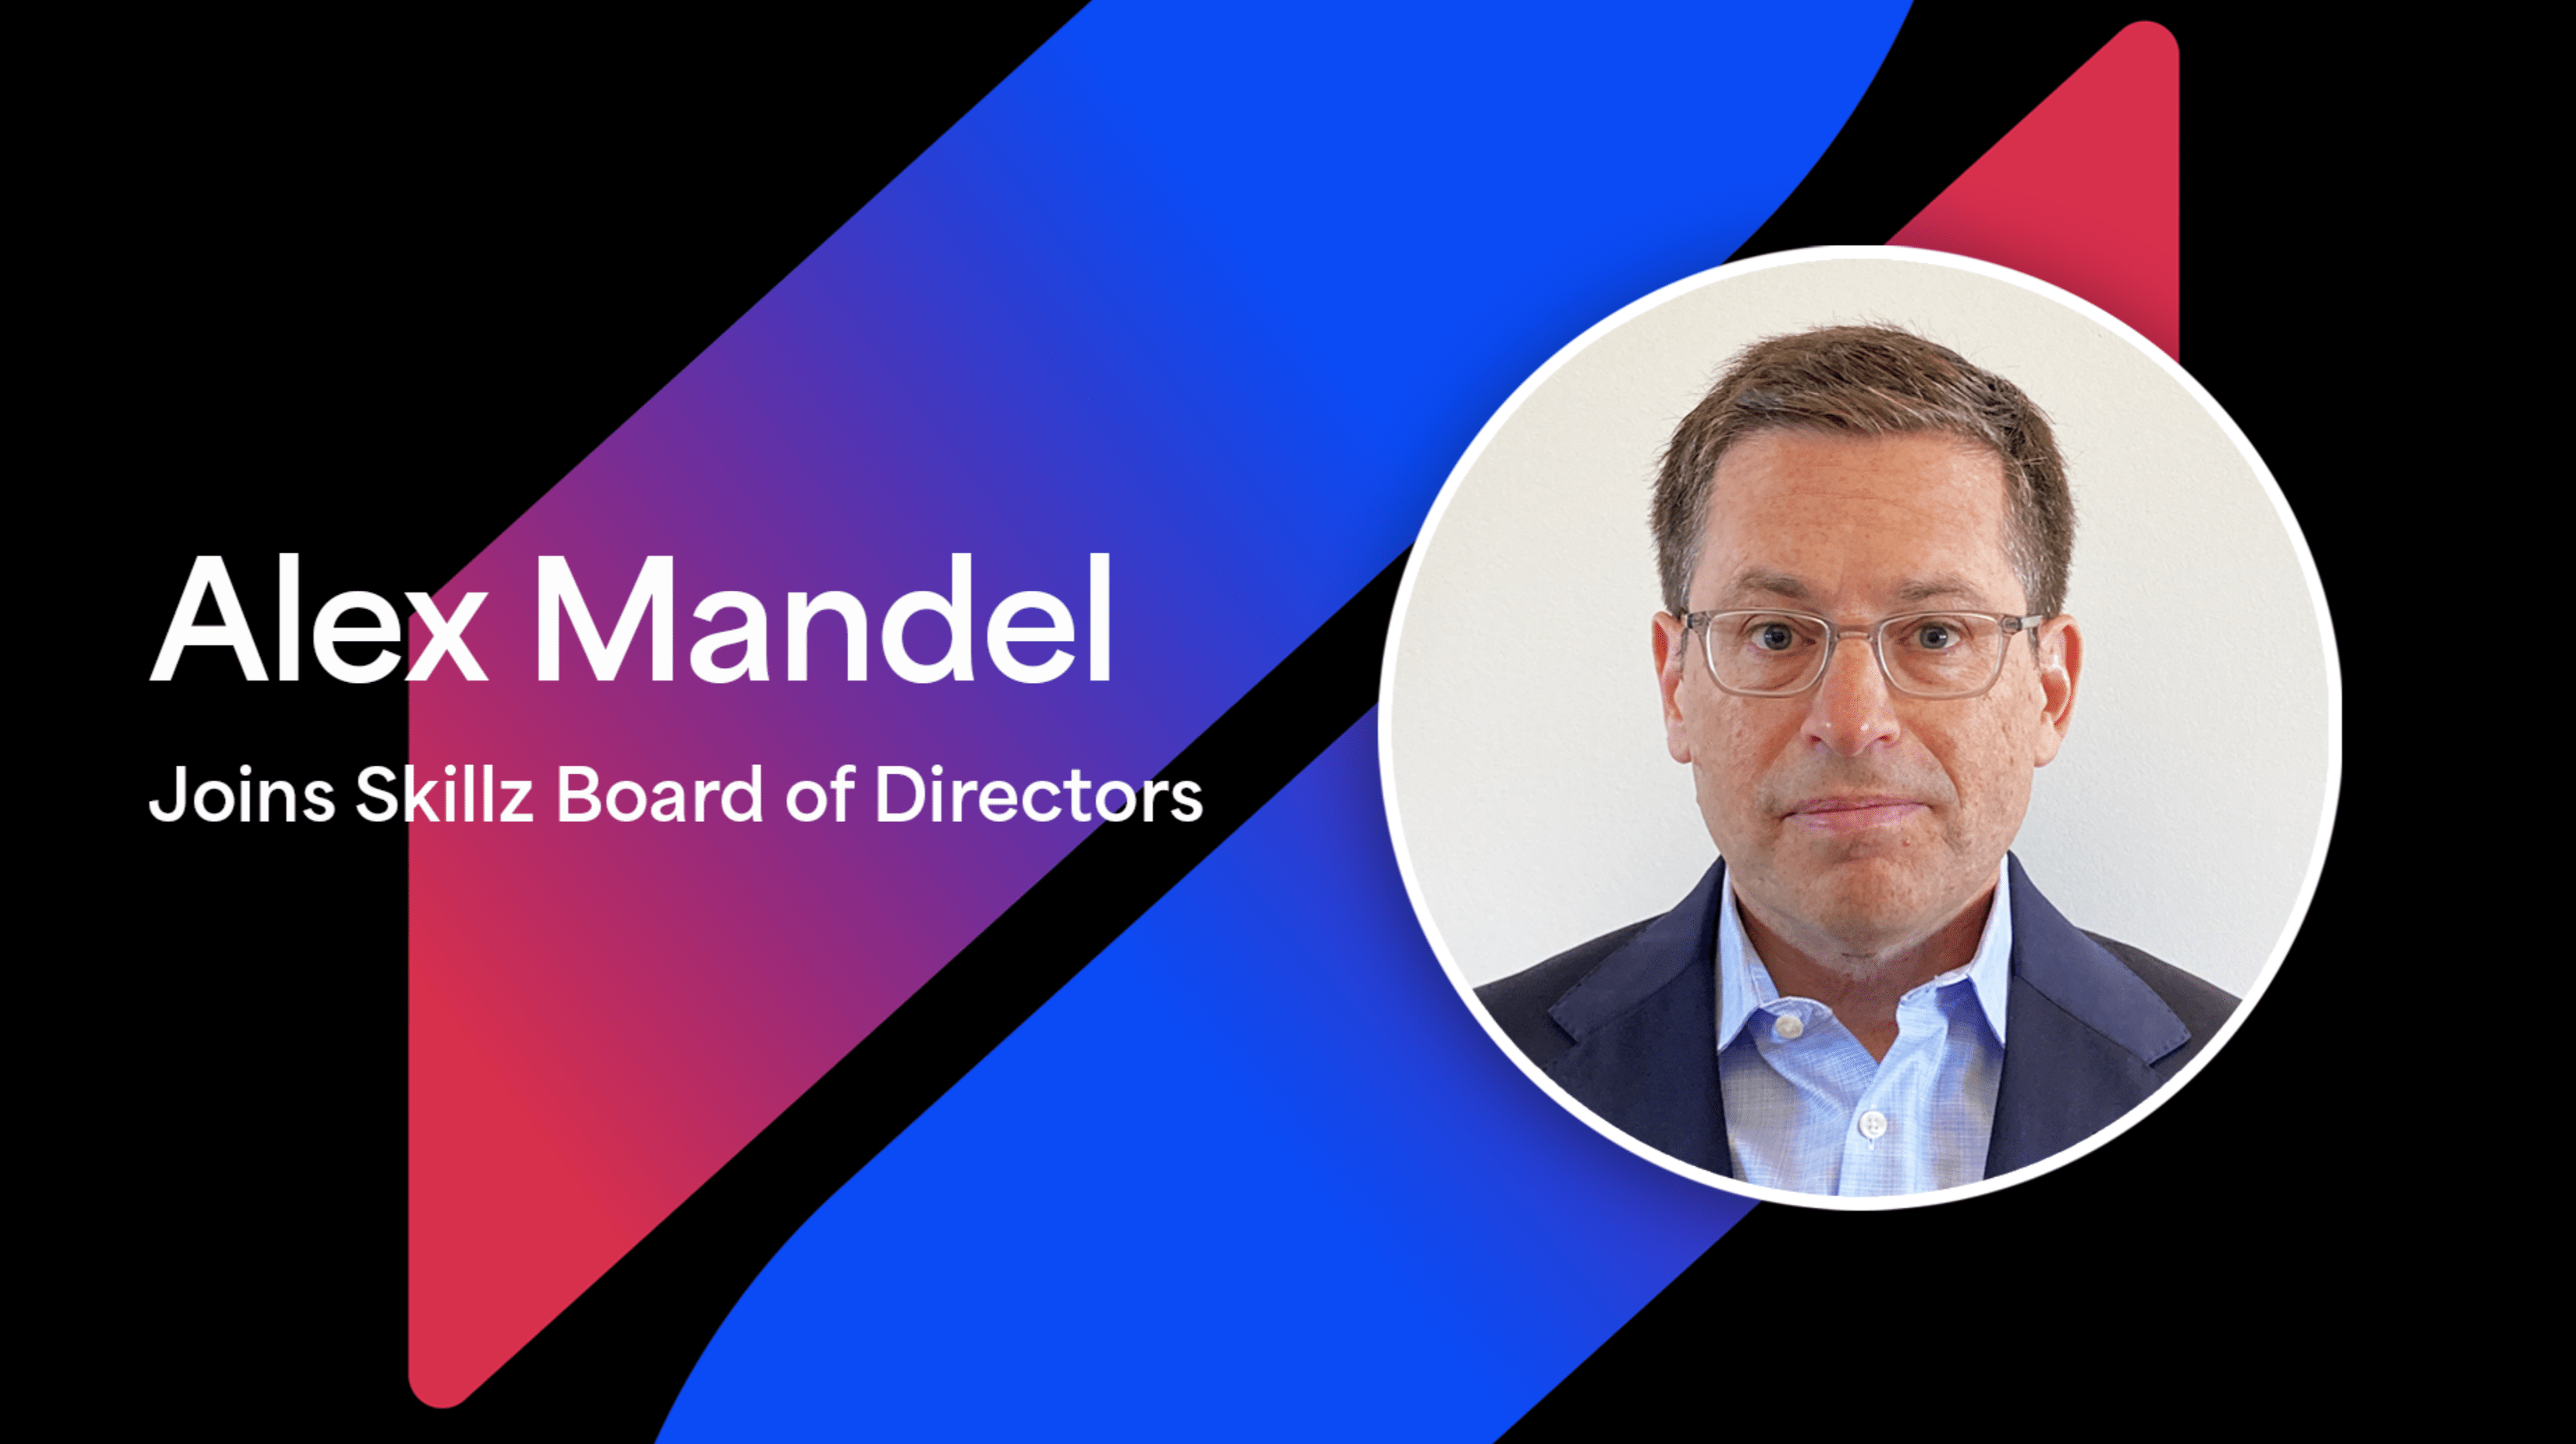 Financial Executive Alex Mandel Joins Skillz Board of Directors